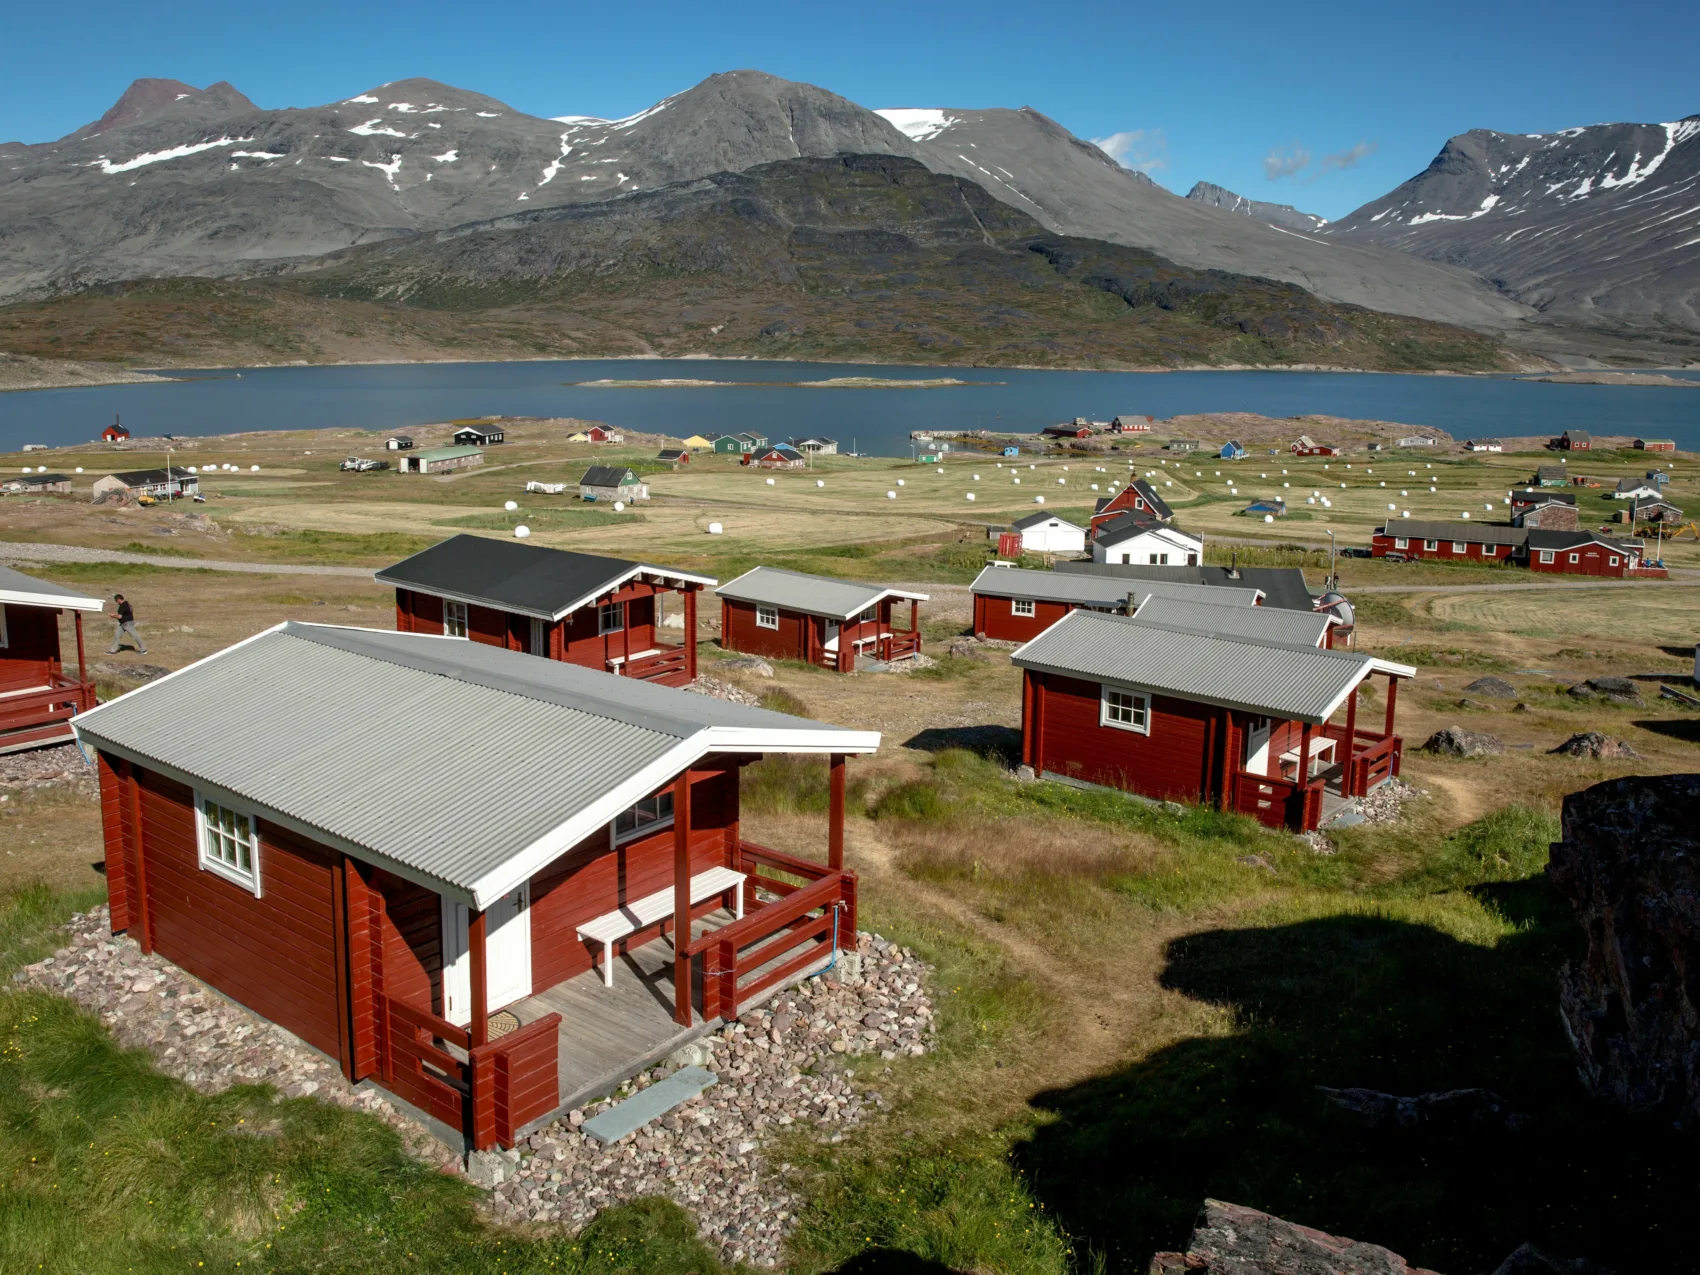 Südgrönland: Hütten in Igaliku
Einzelne rote Hütten, im Hintergrund Berge und Fjord